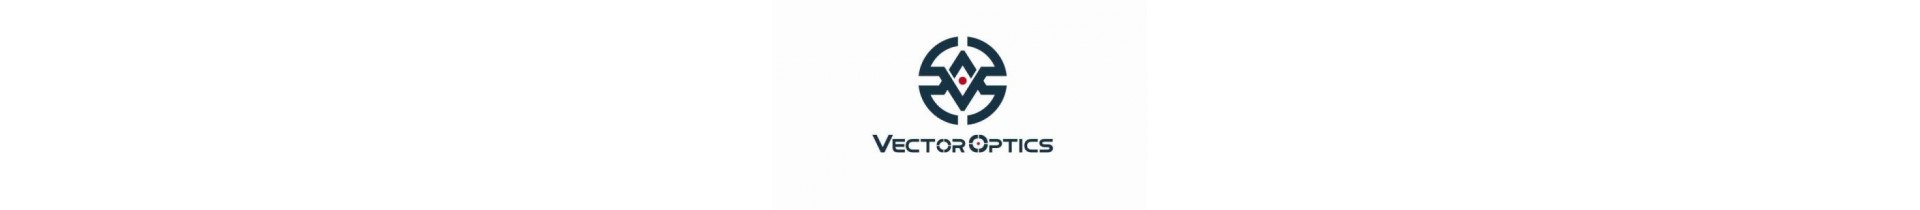 Retrouvez sur www.tactirshop.fr toute la gamme des rails Vector Optics